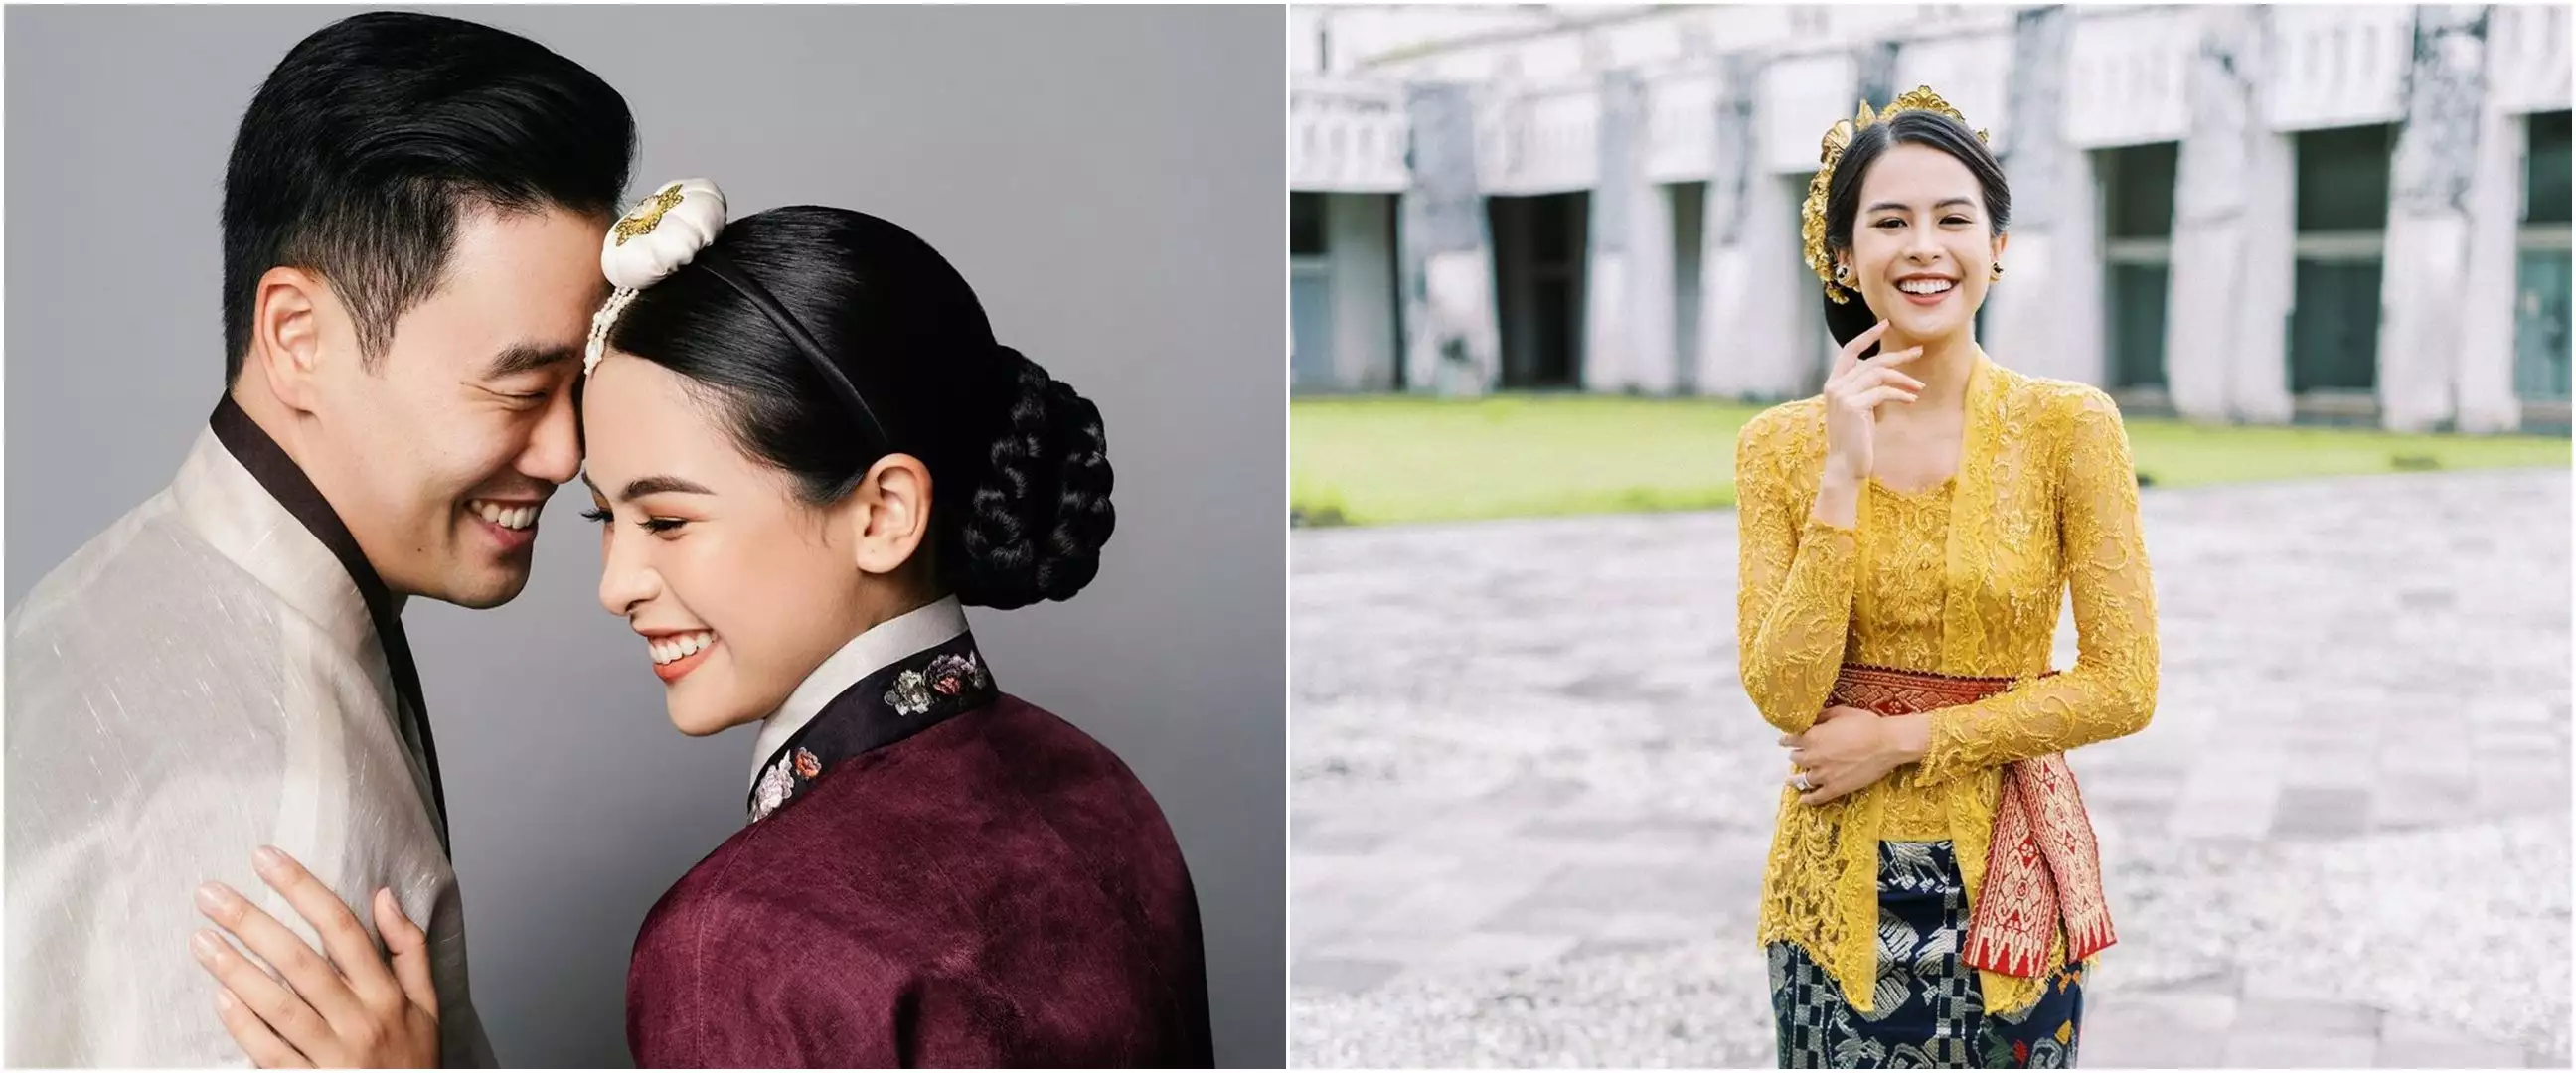 Unggah foto masa kecil bareng ibu, paras Maudy Ayunda disebut mirip sang suami Jesse Choi